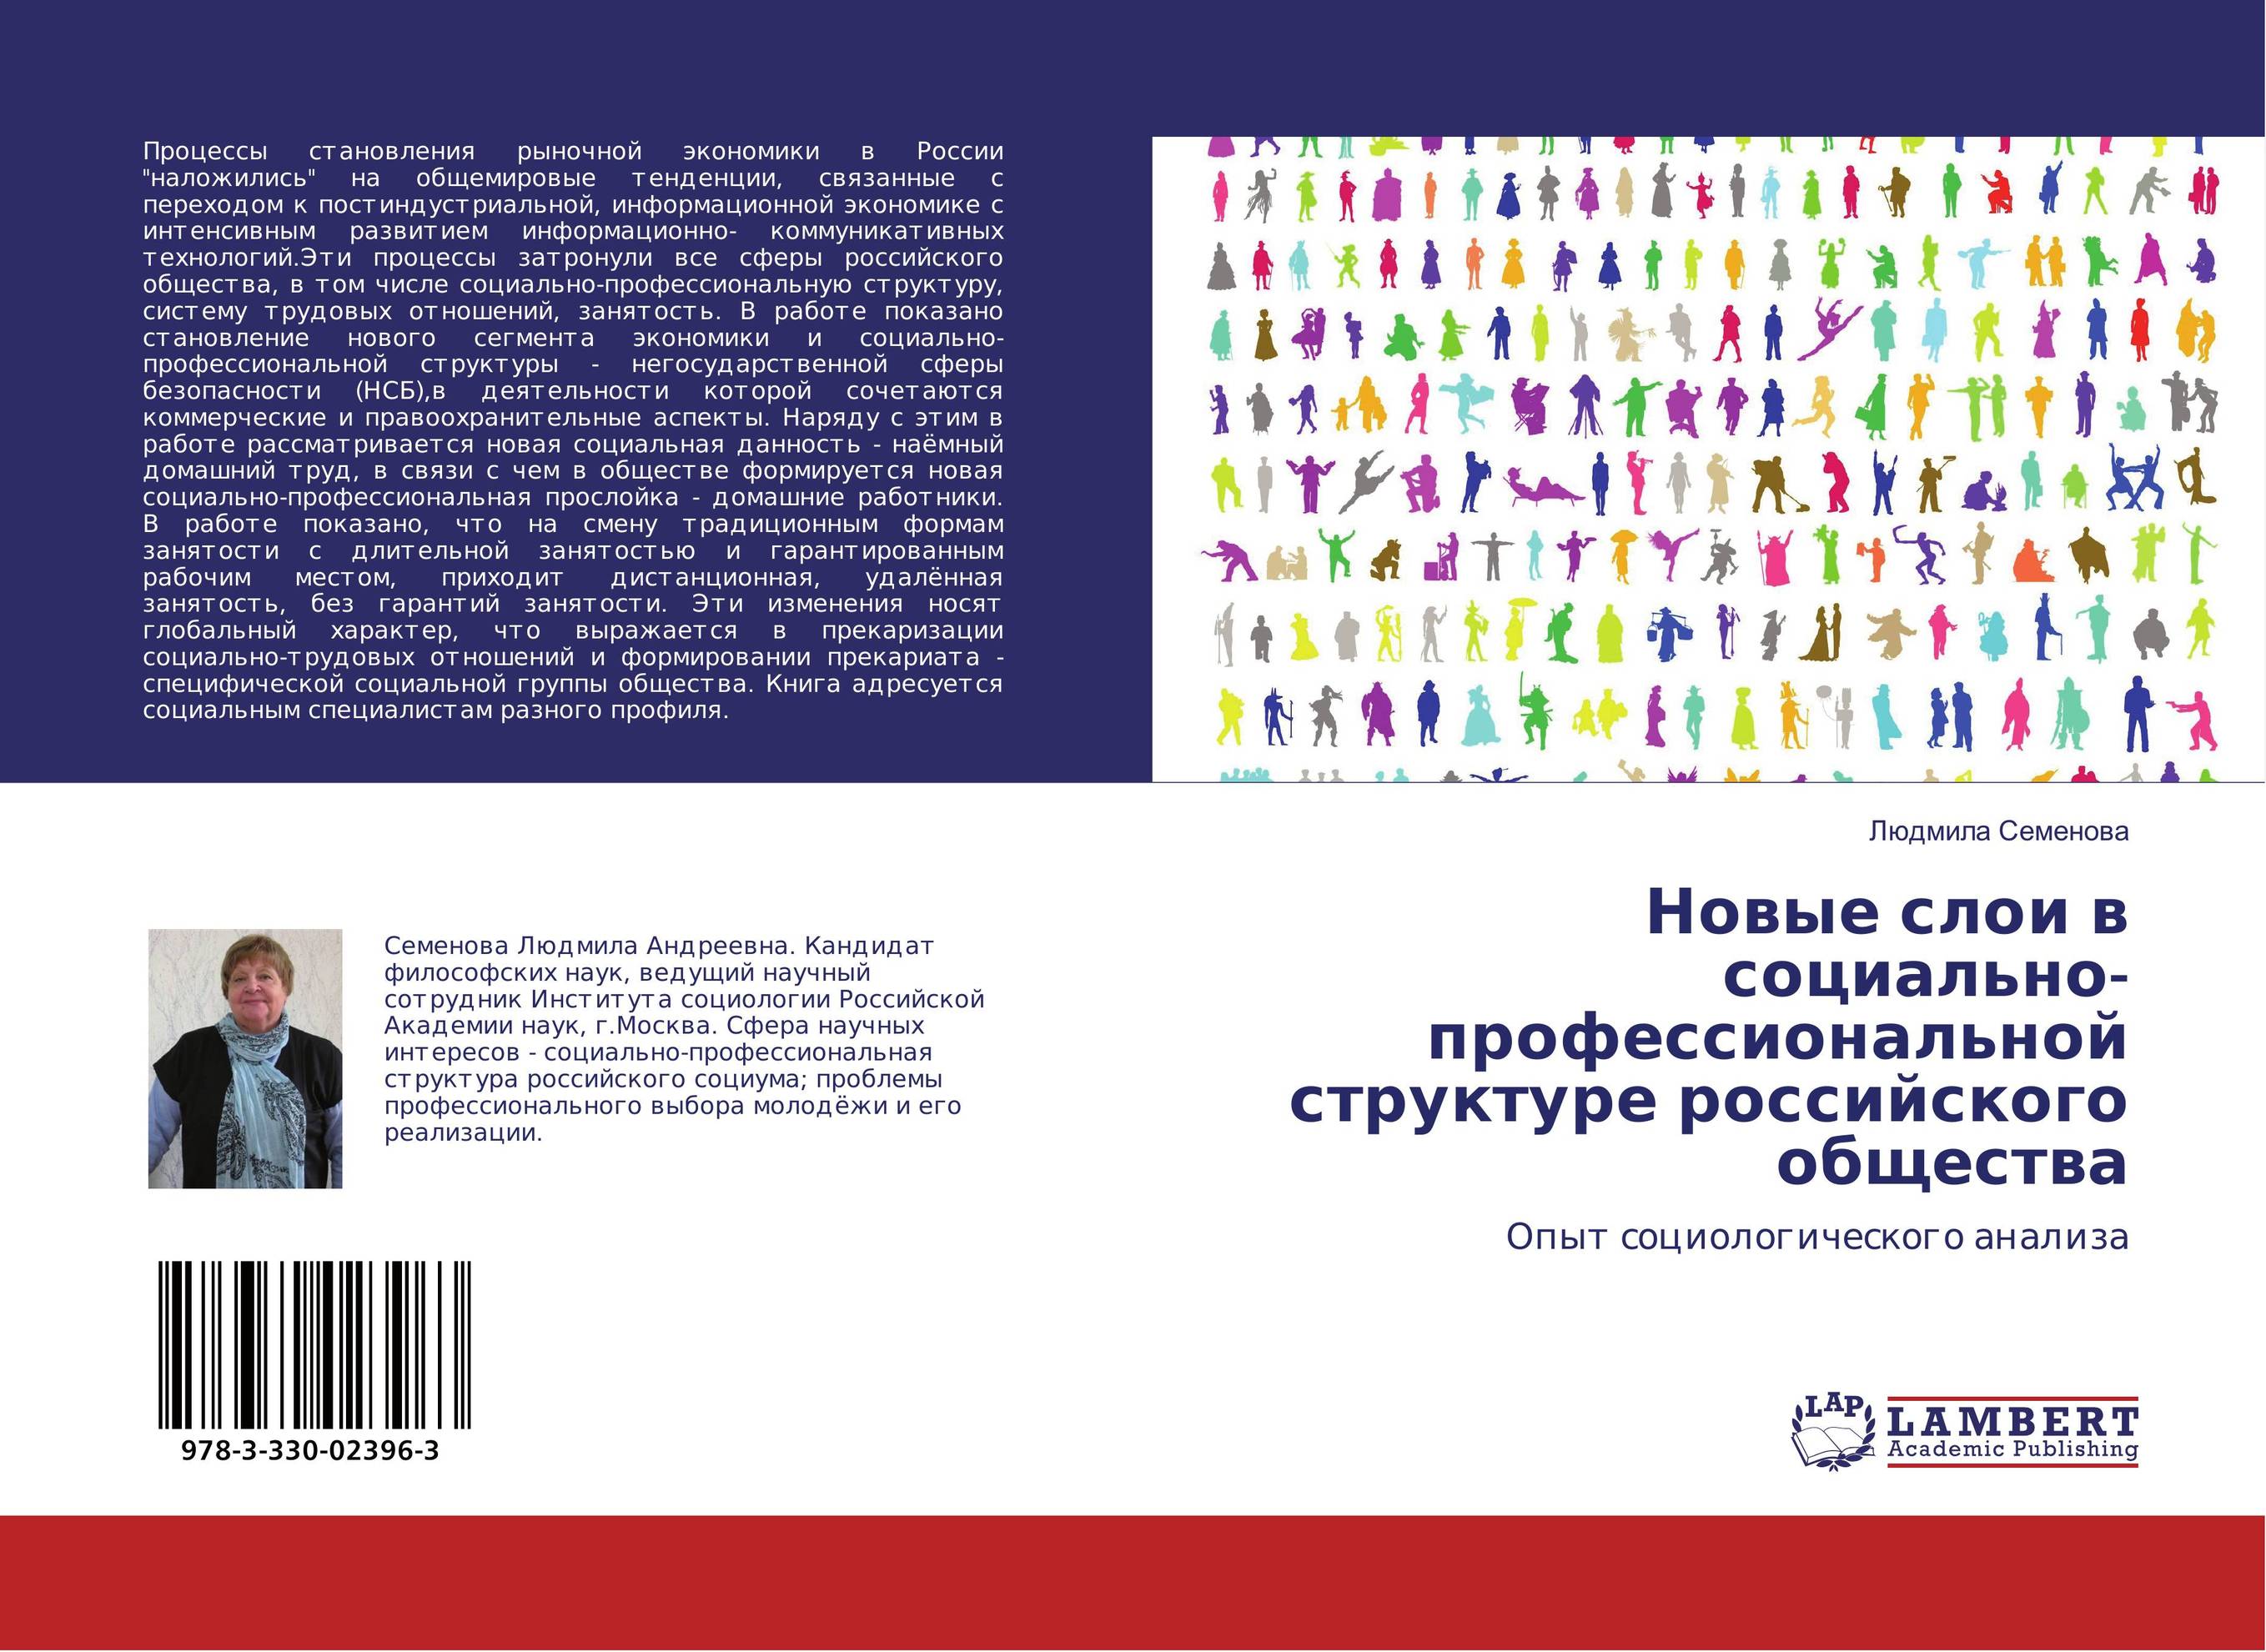 
        Новые слои в социально-профессиональной структуре российского общества. Опыт социологического анализа.
      